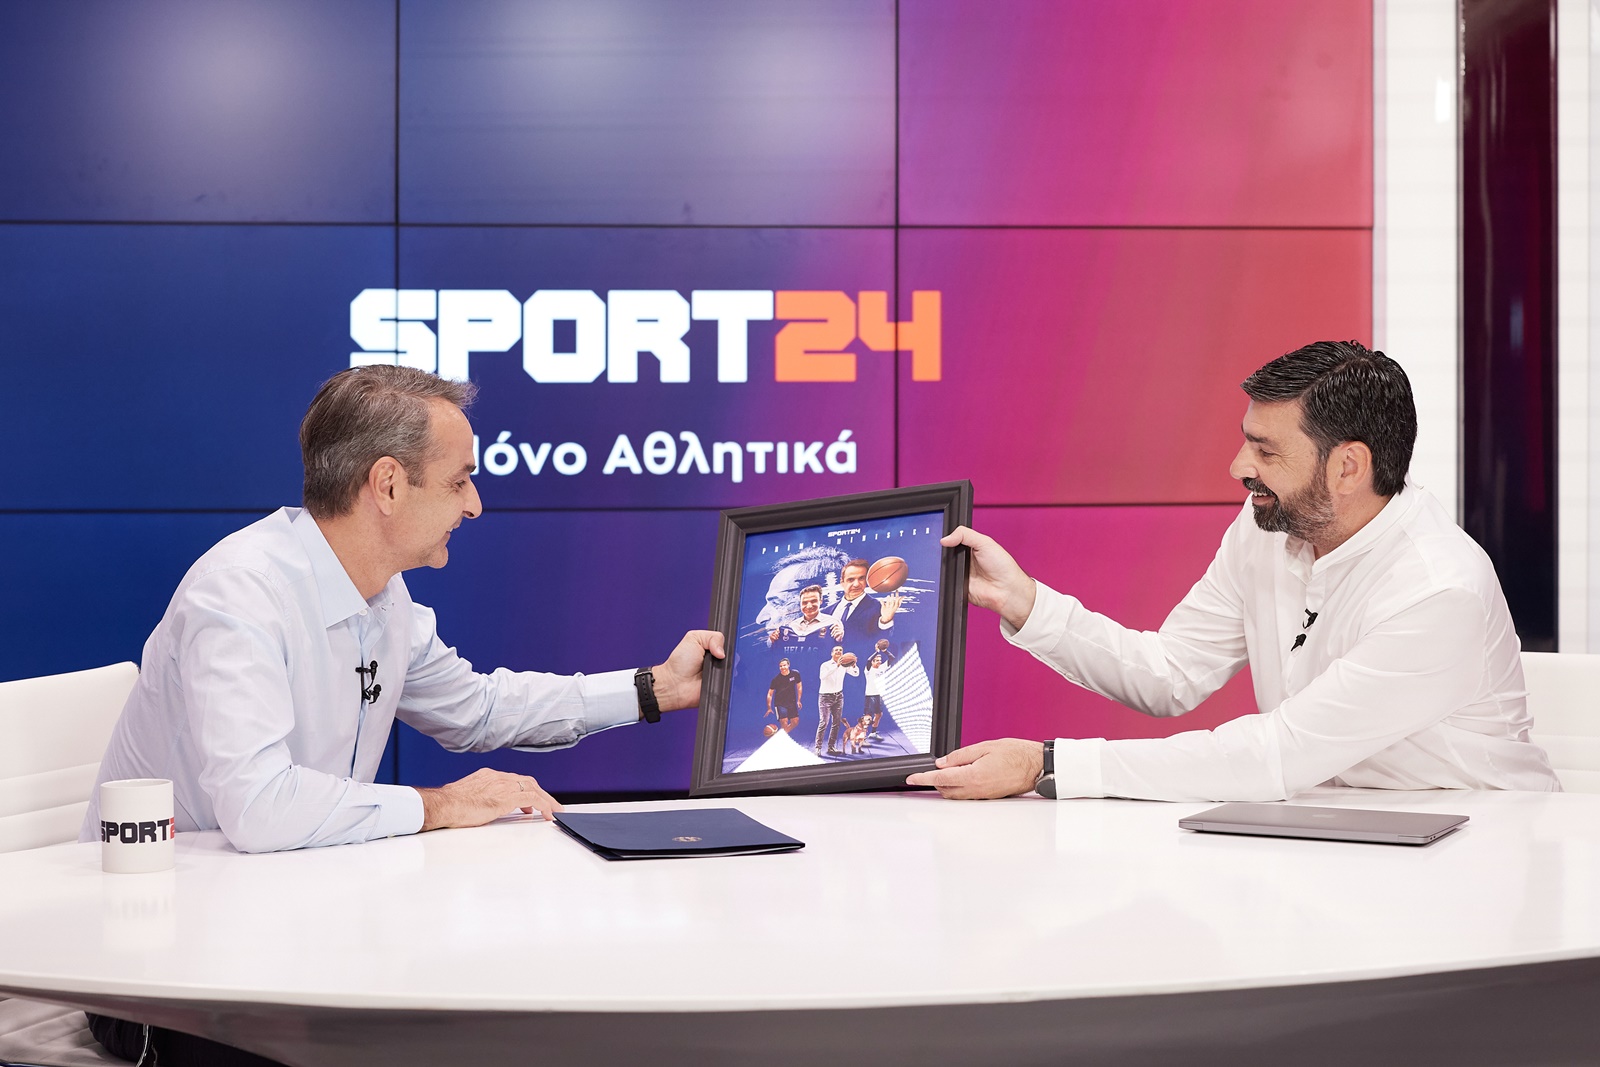 Μητσοτάκης sport24.gr: Μια διαφορετική συνέντευξη